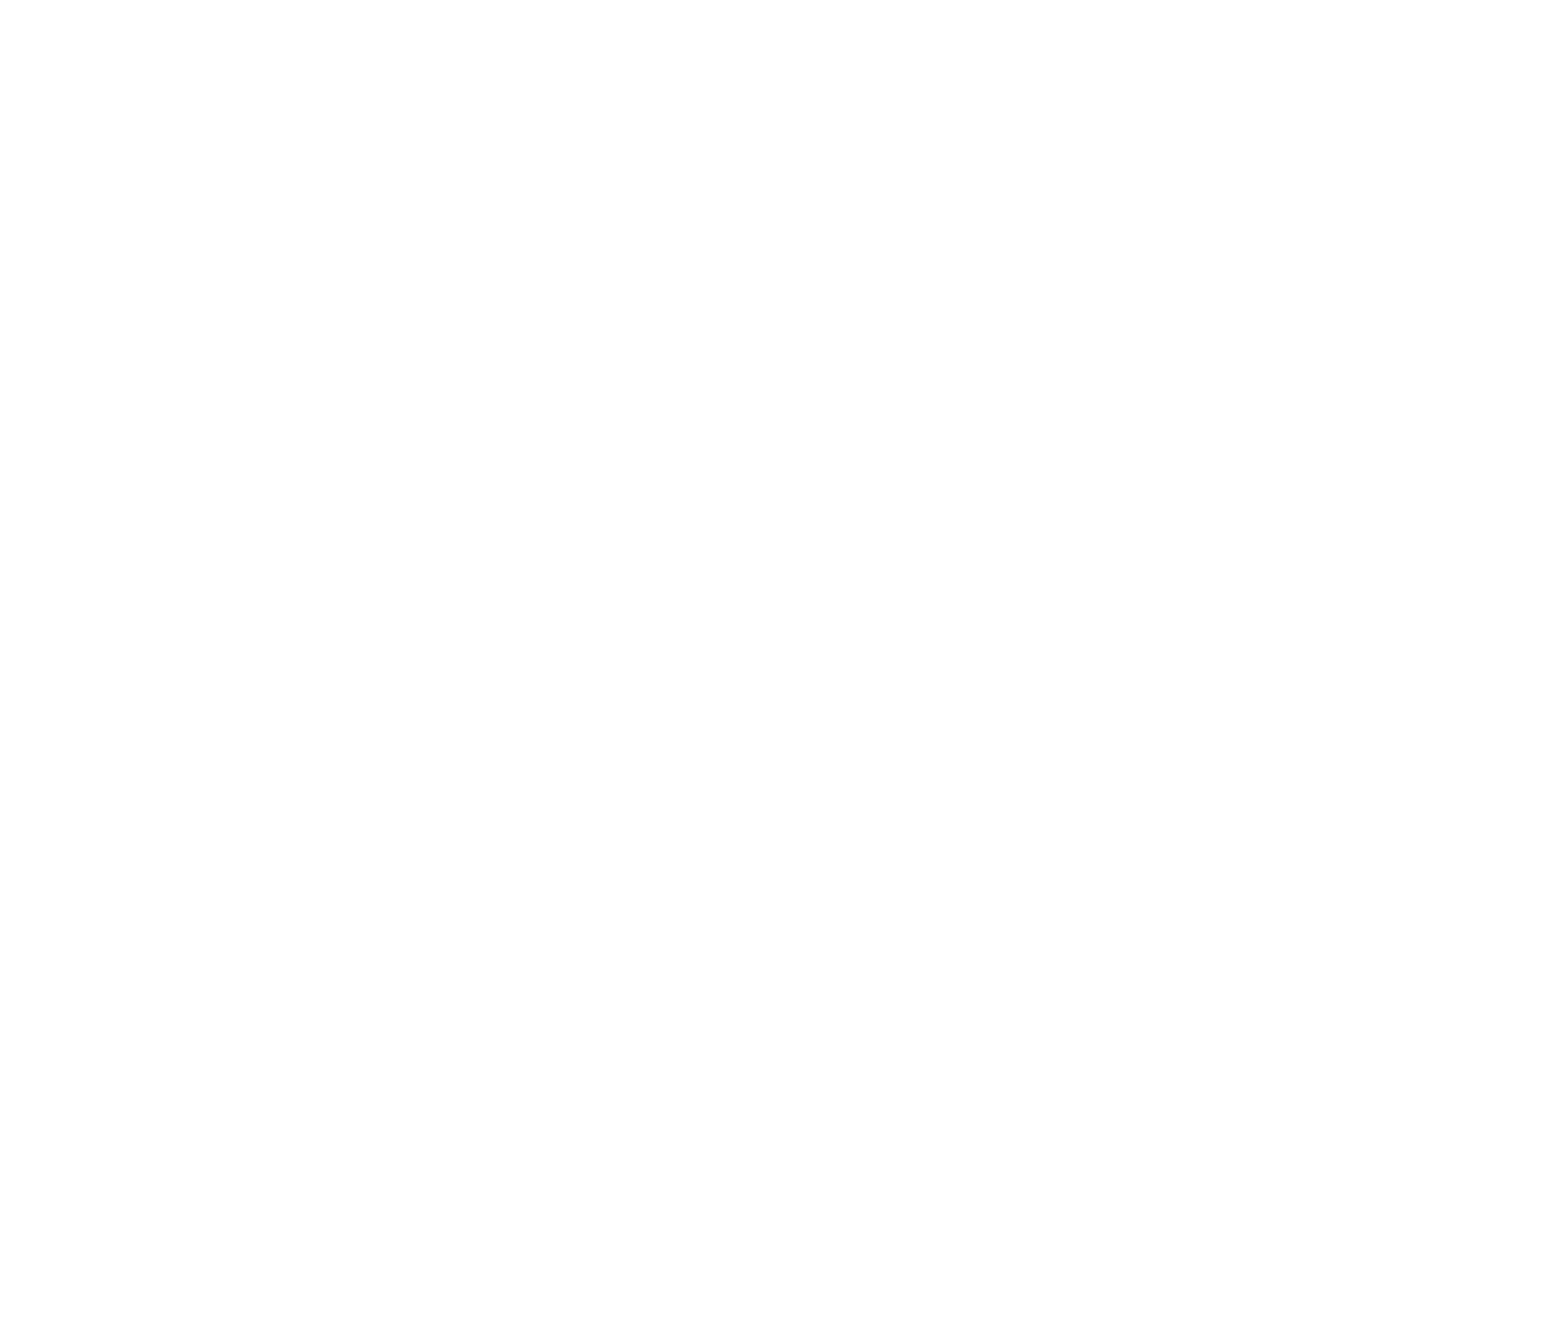 Quicklogic logo for dark backgrounds (transparent PNG)